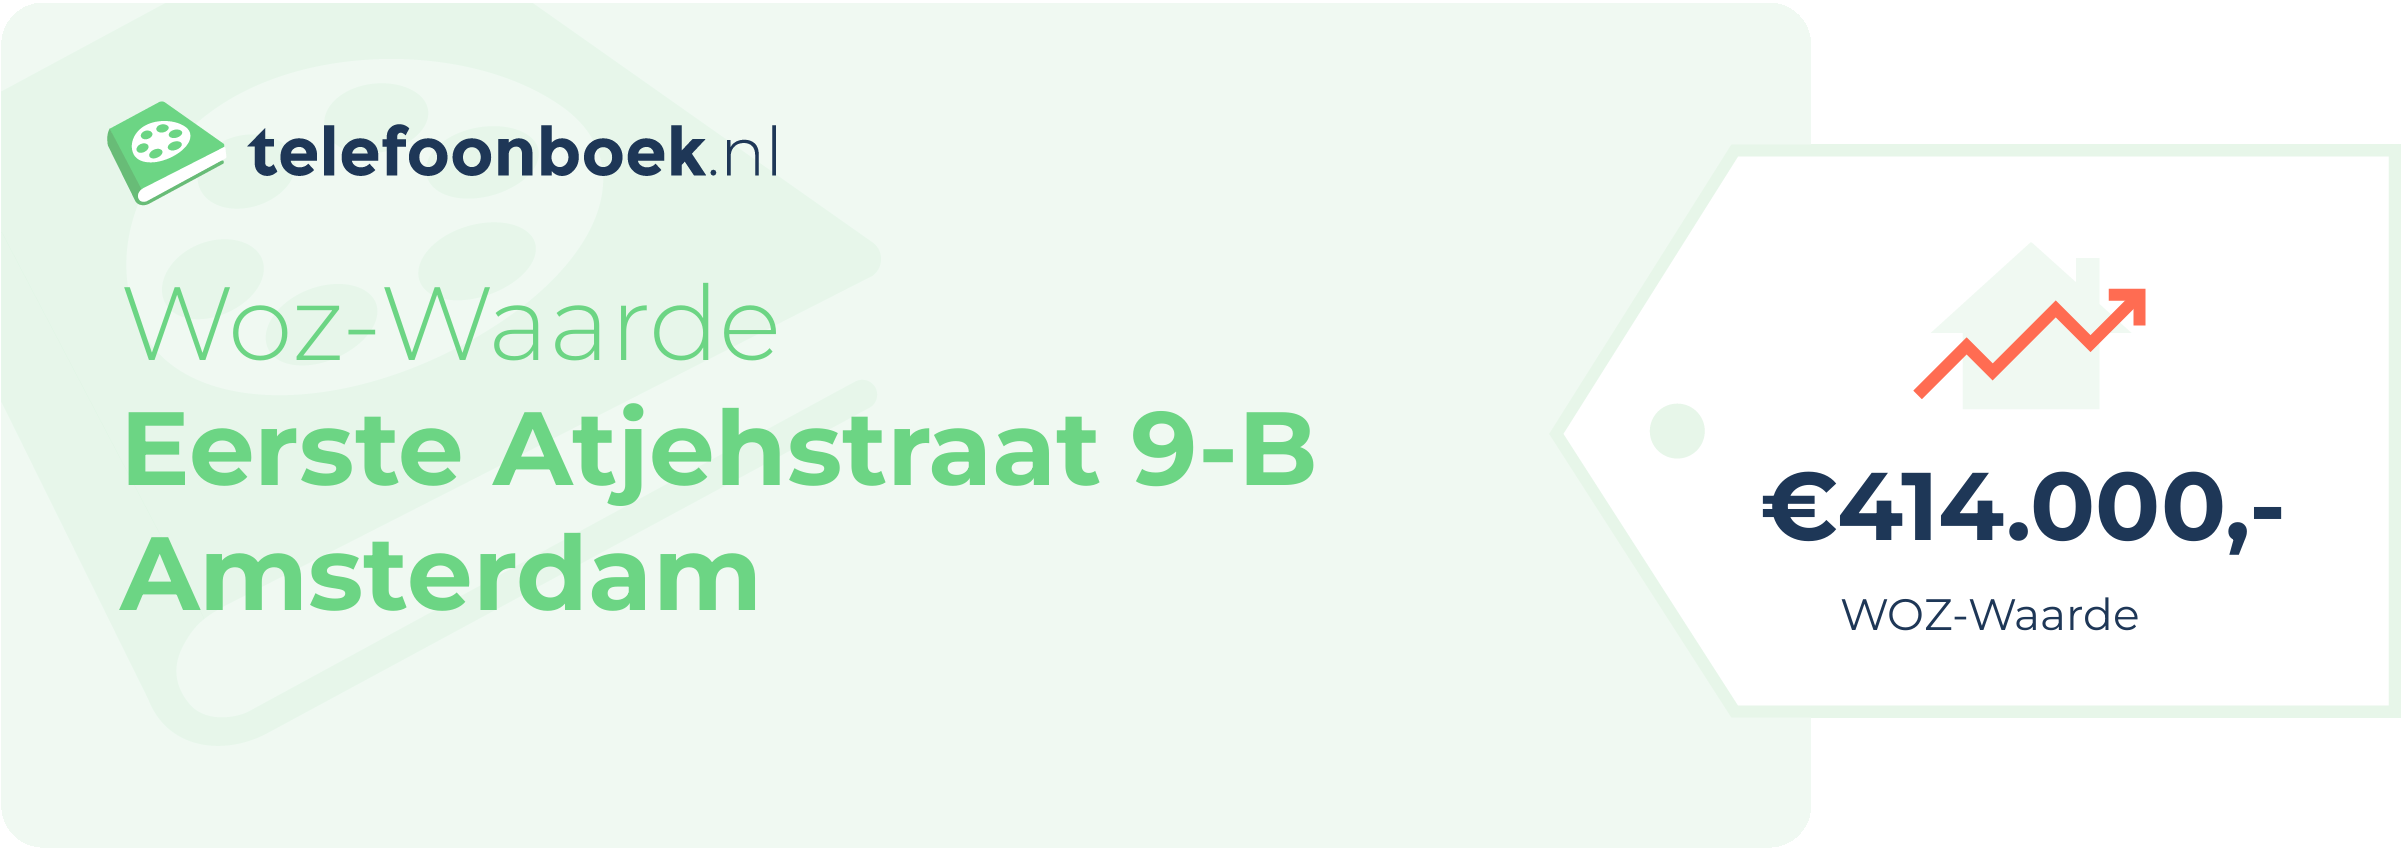 WOZ-waarde Eerste Atjehstraat 9-B Amsterdam